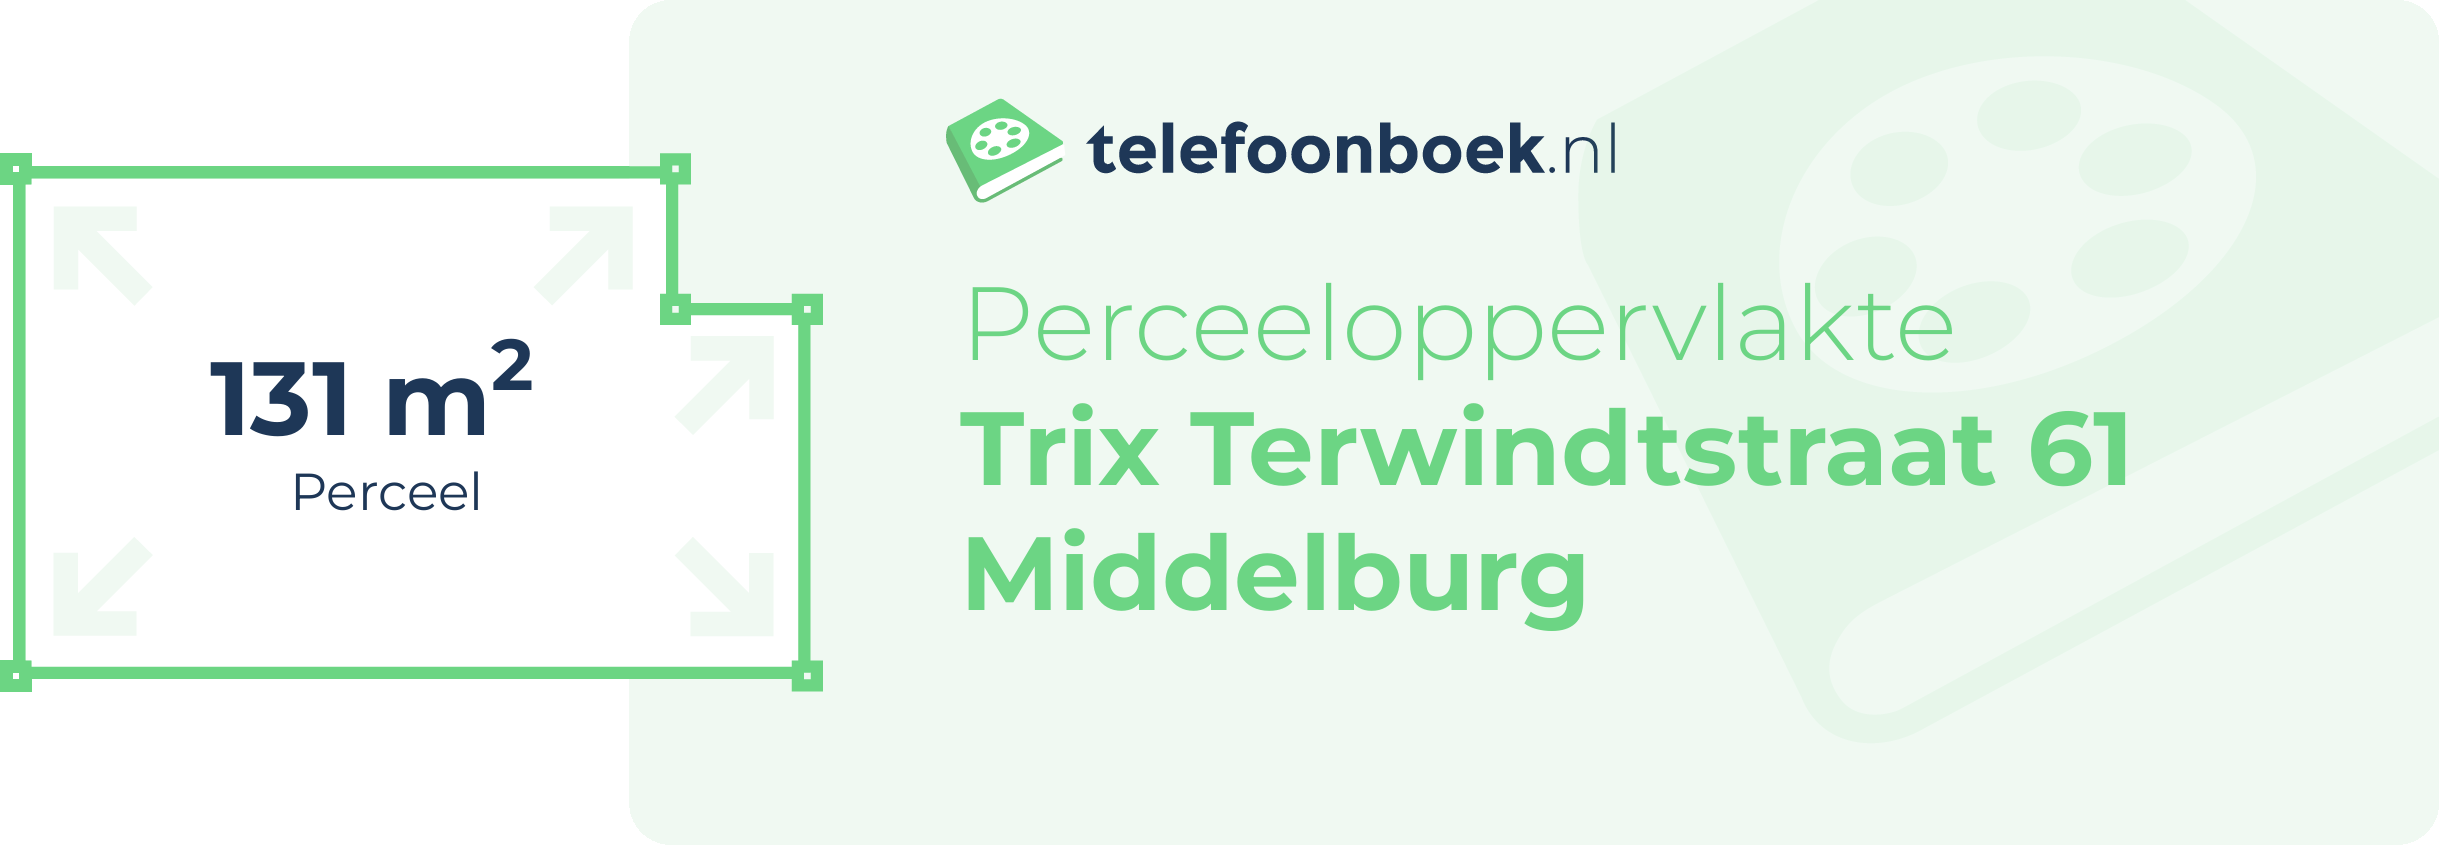 Perceeloppervlakte Trix Terwindtstraat 61 Middelburg